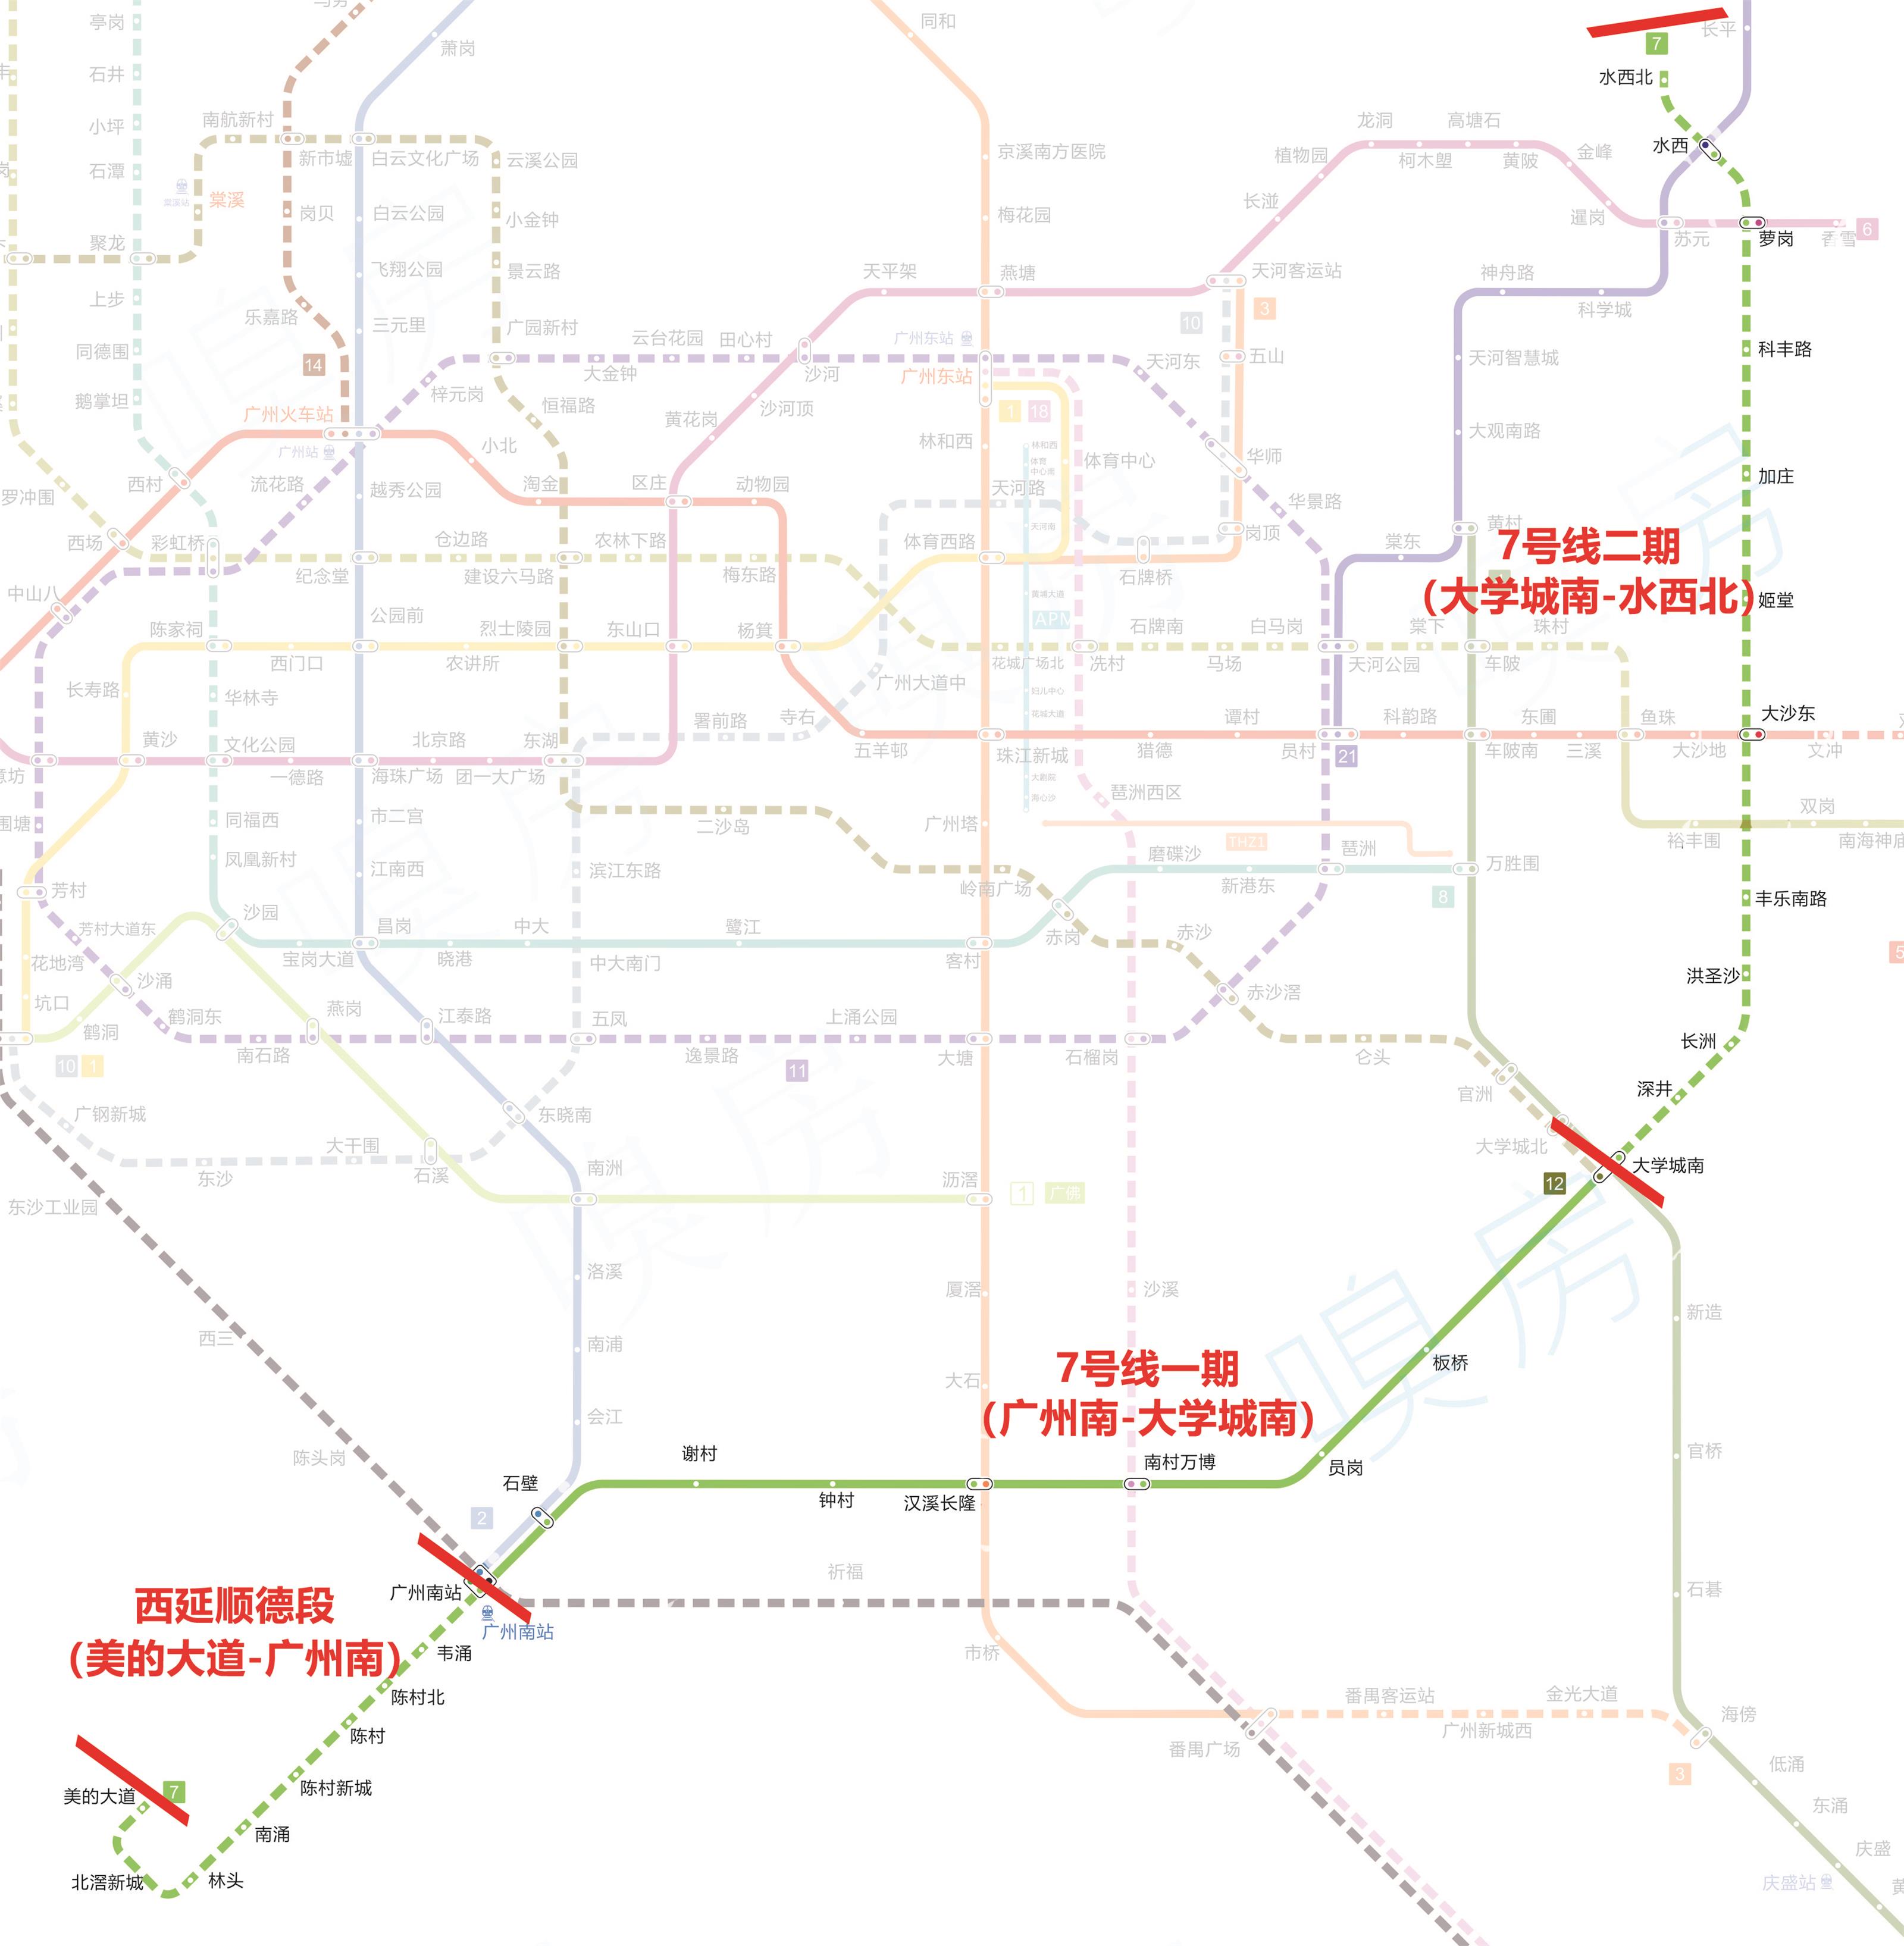 你以为广州地铁7号线就这样看完全貌你才知道它有多牛